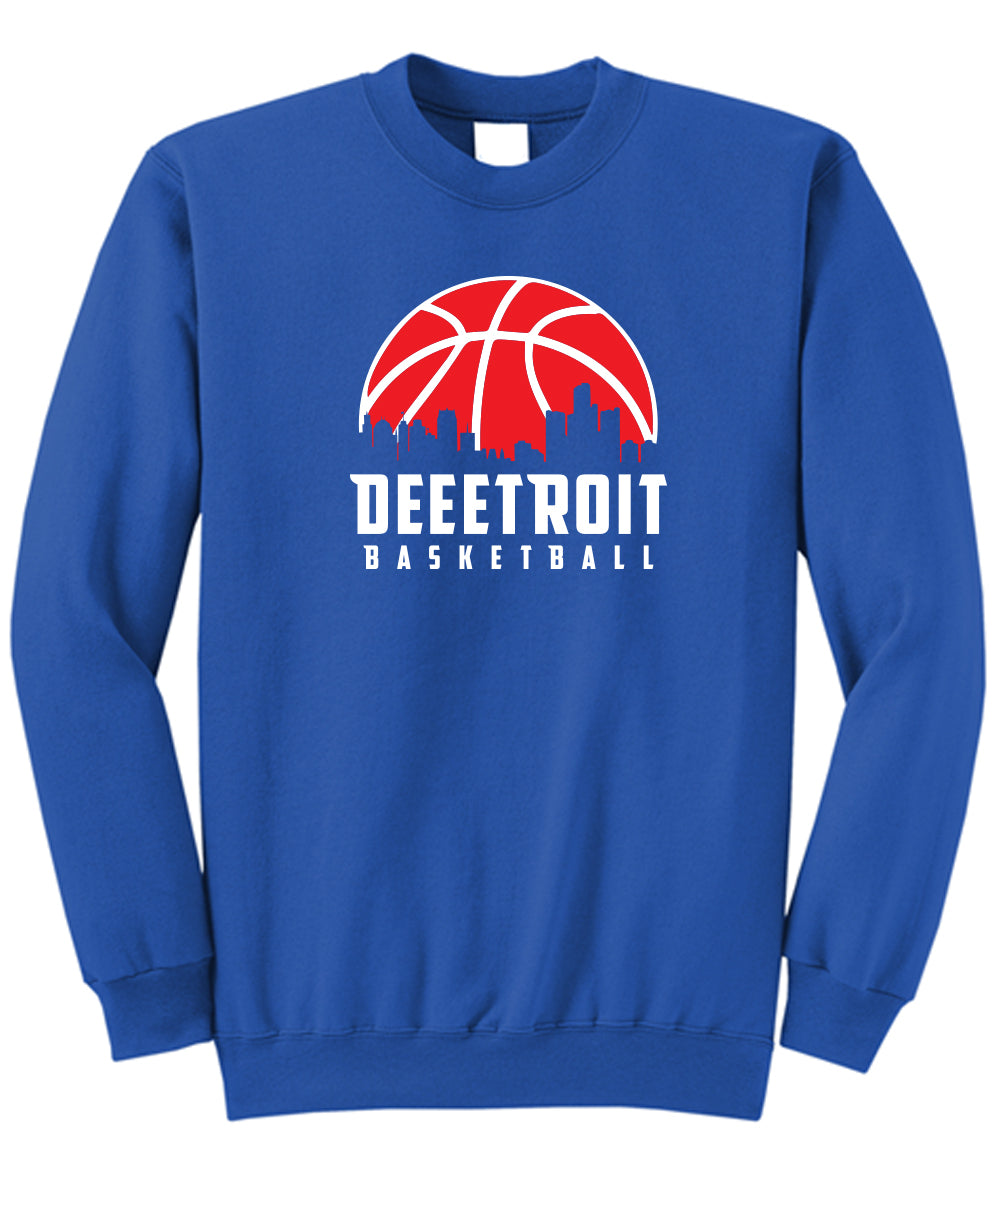 Deeetroit Basketball Crew Fleece